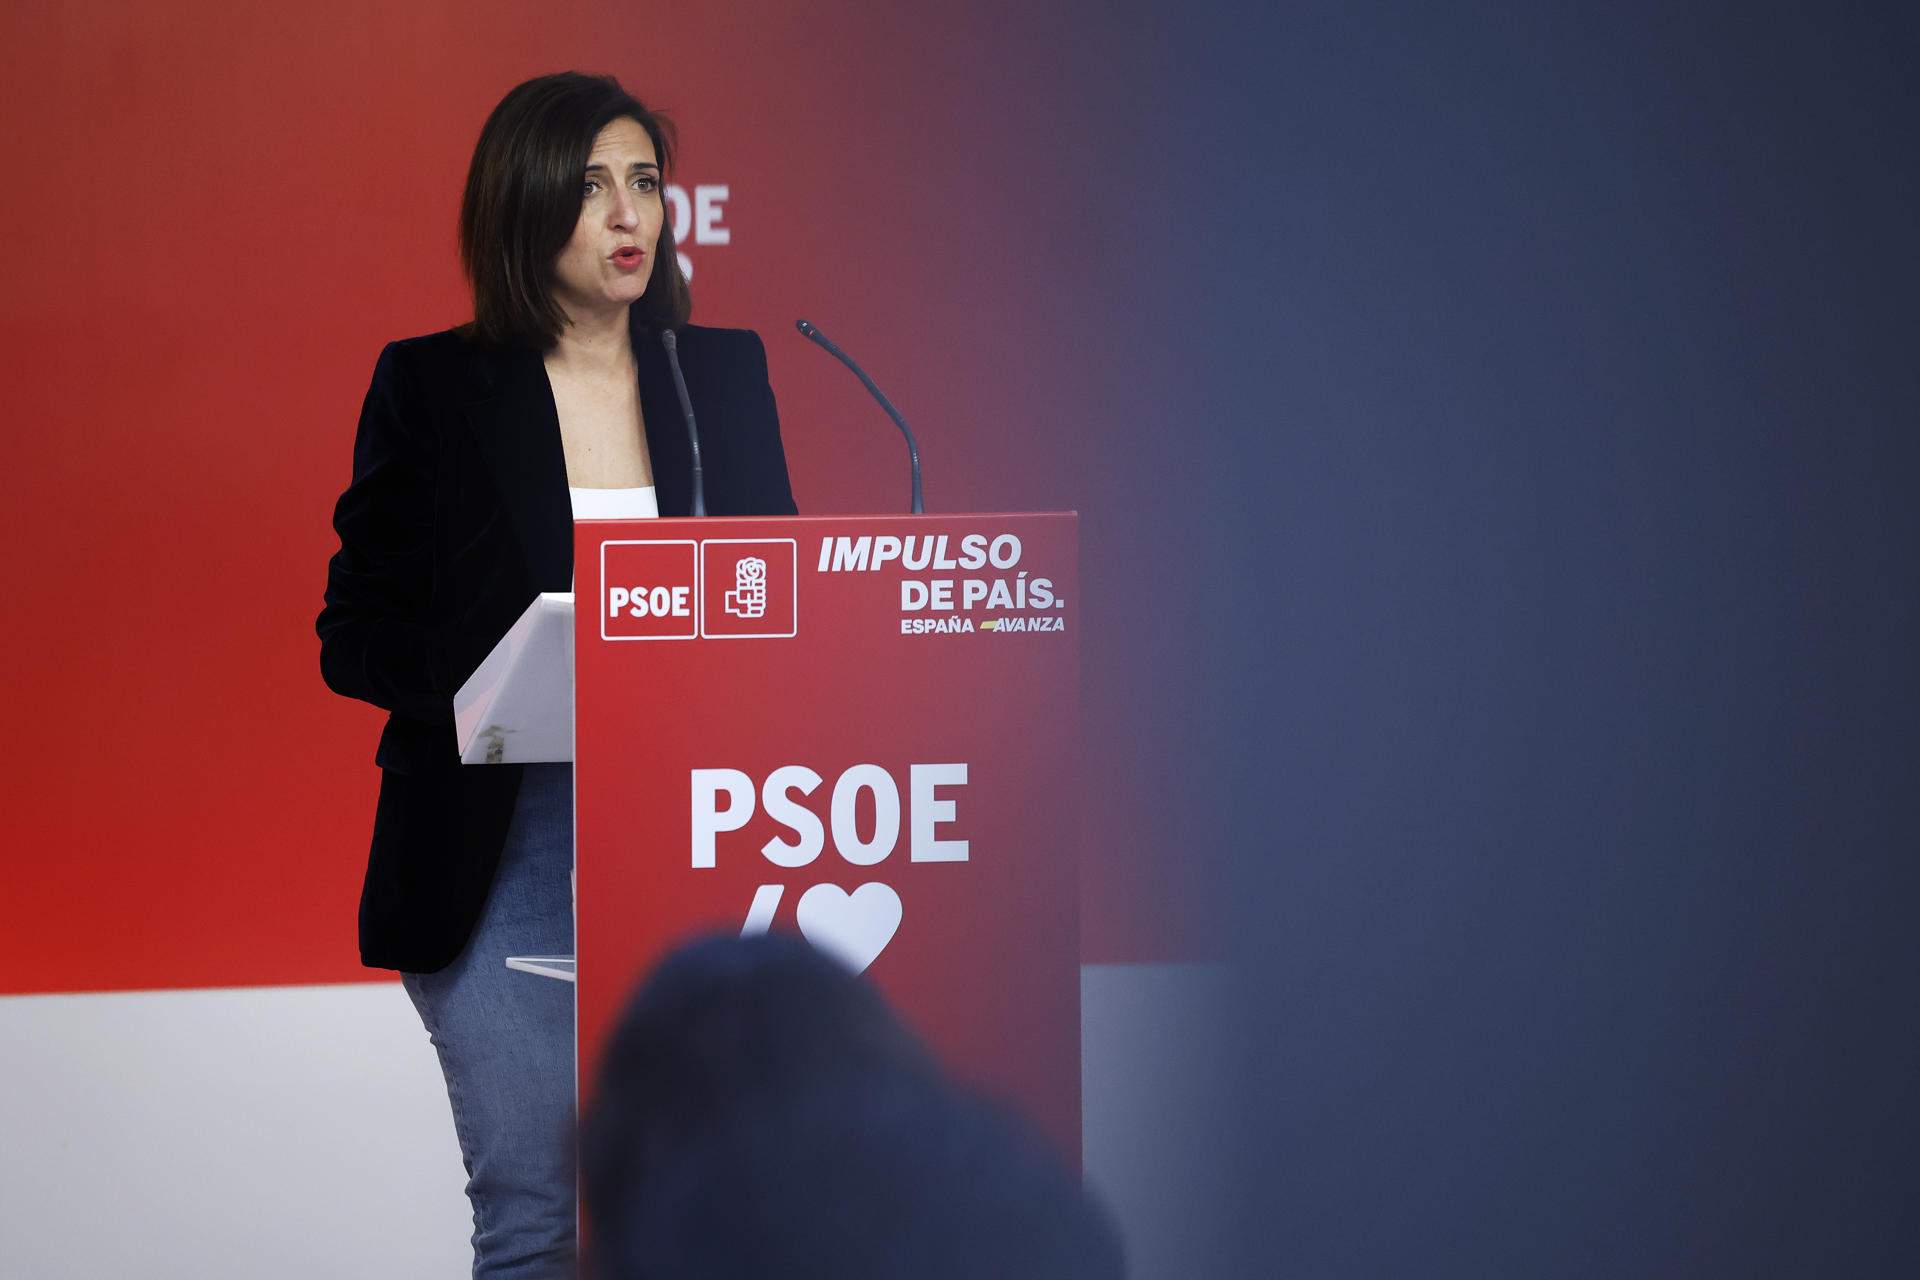 El PSOE vaticina una "legislatura larga" en España independientemente del resultado del 12-M